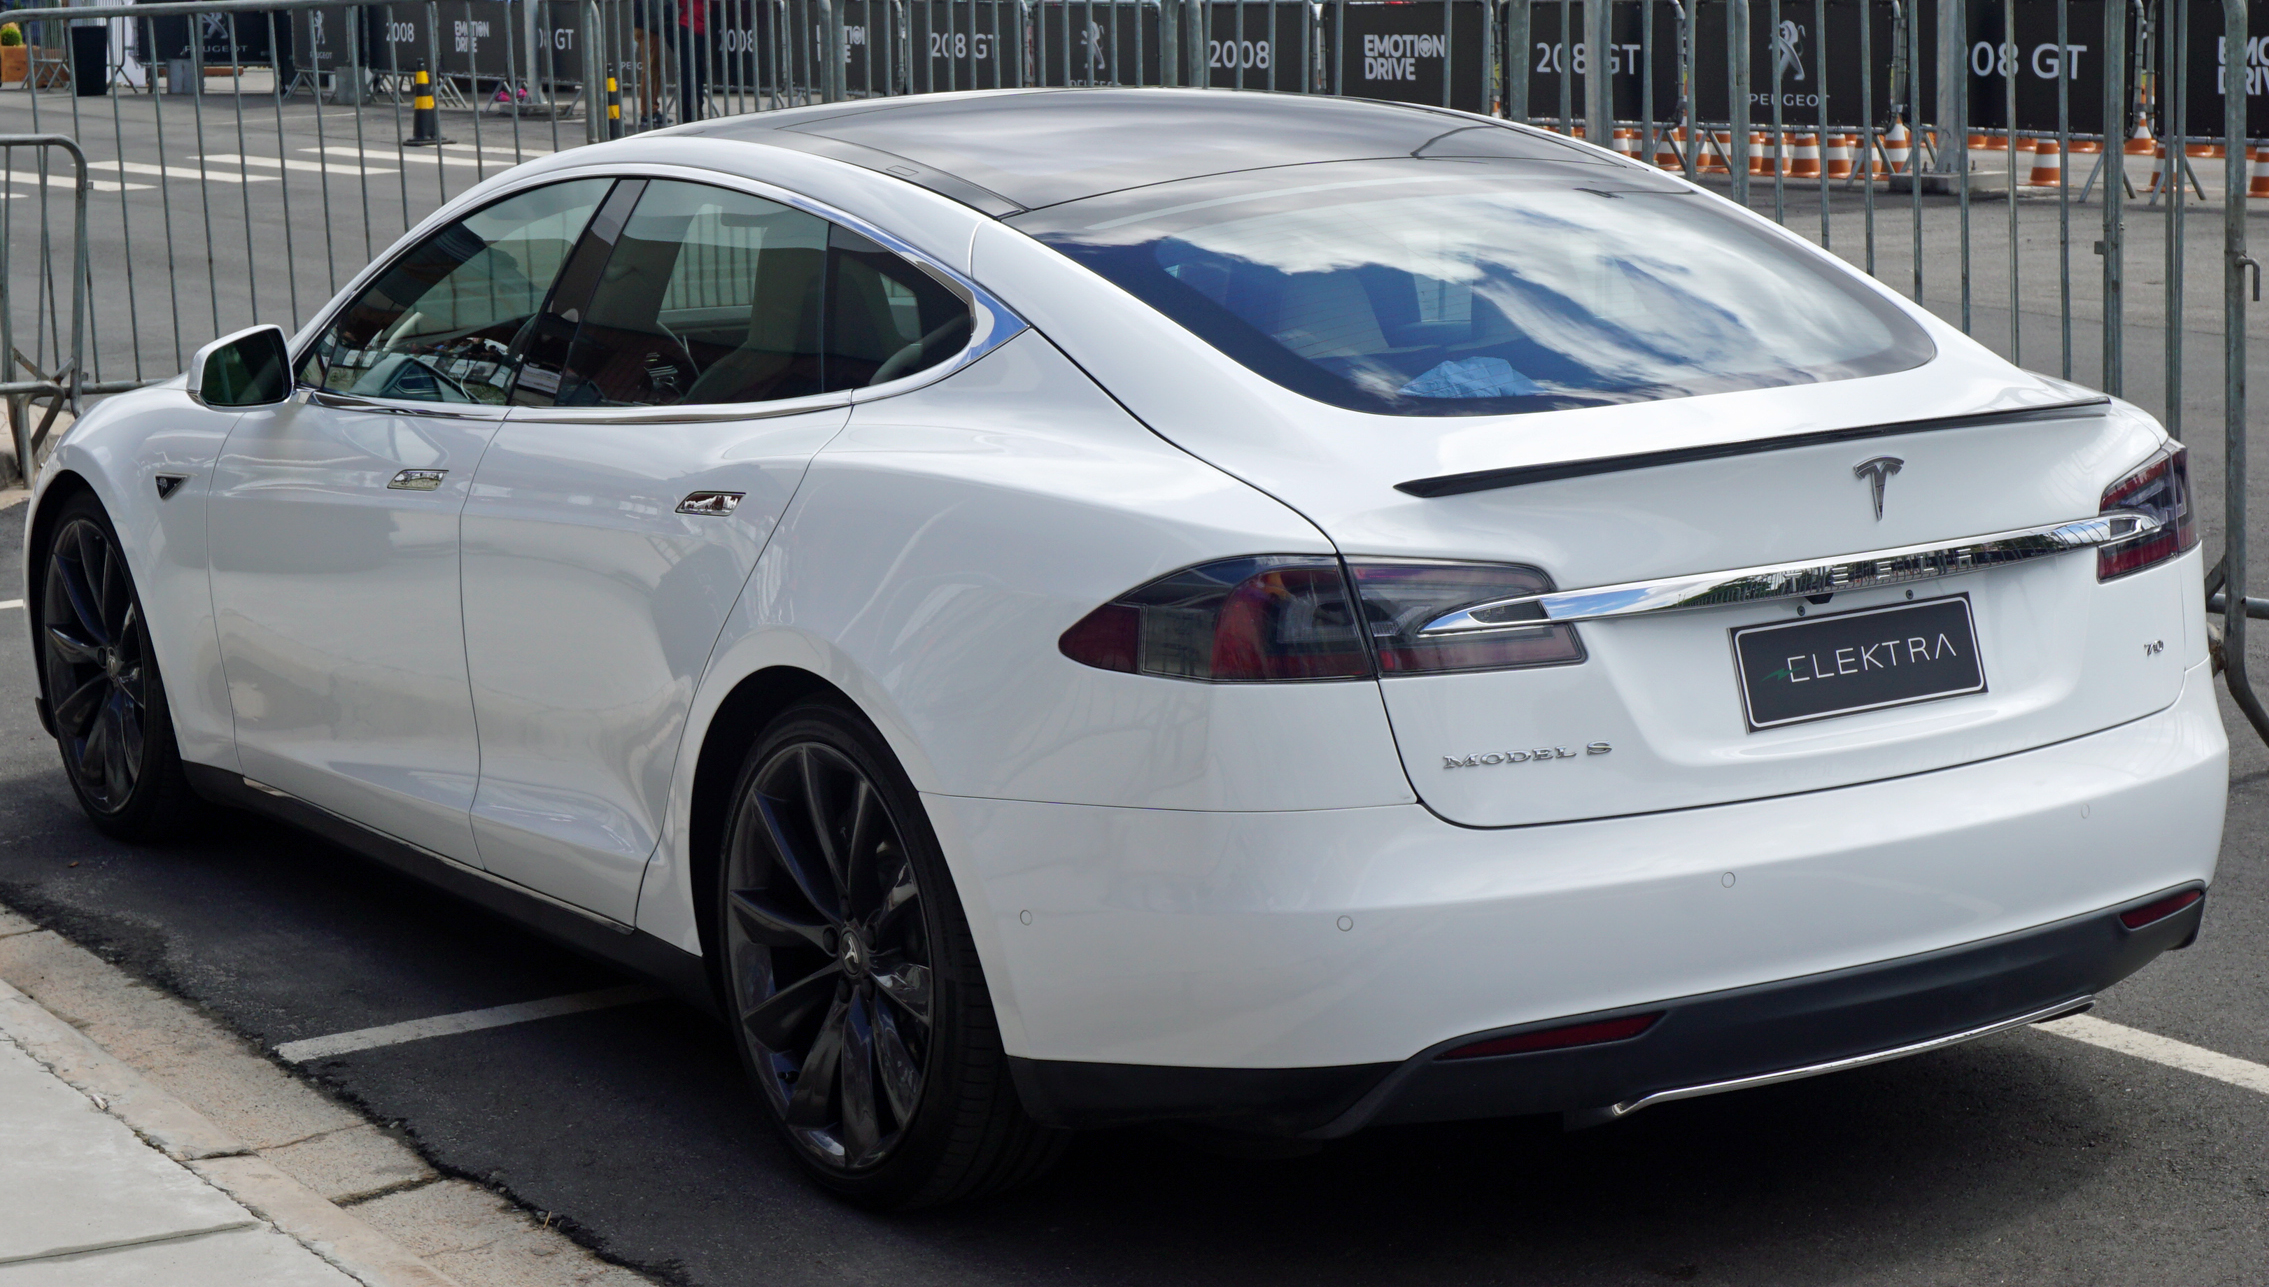 Groene achtergrond adviseren Schrijf een brief File:Tesla Model S SAO 2016 9199 (cropped).jpg - Wikimedia Commons